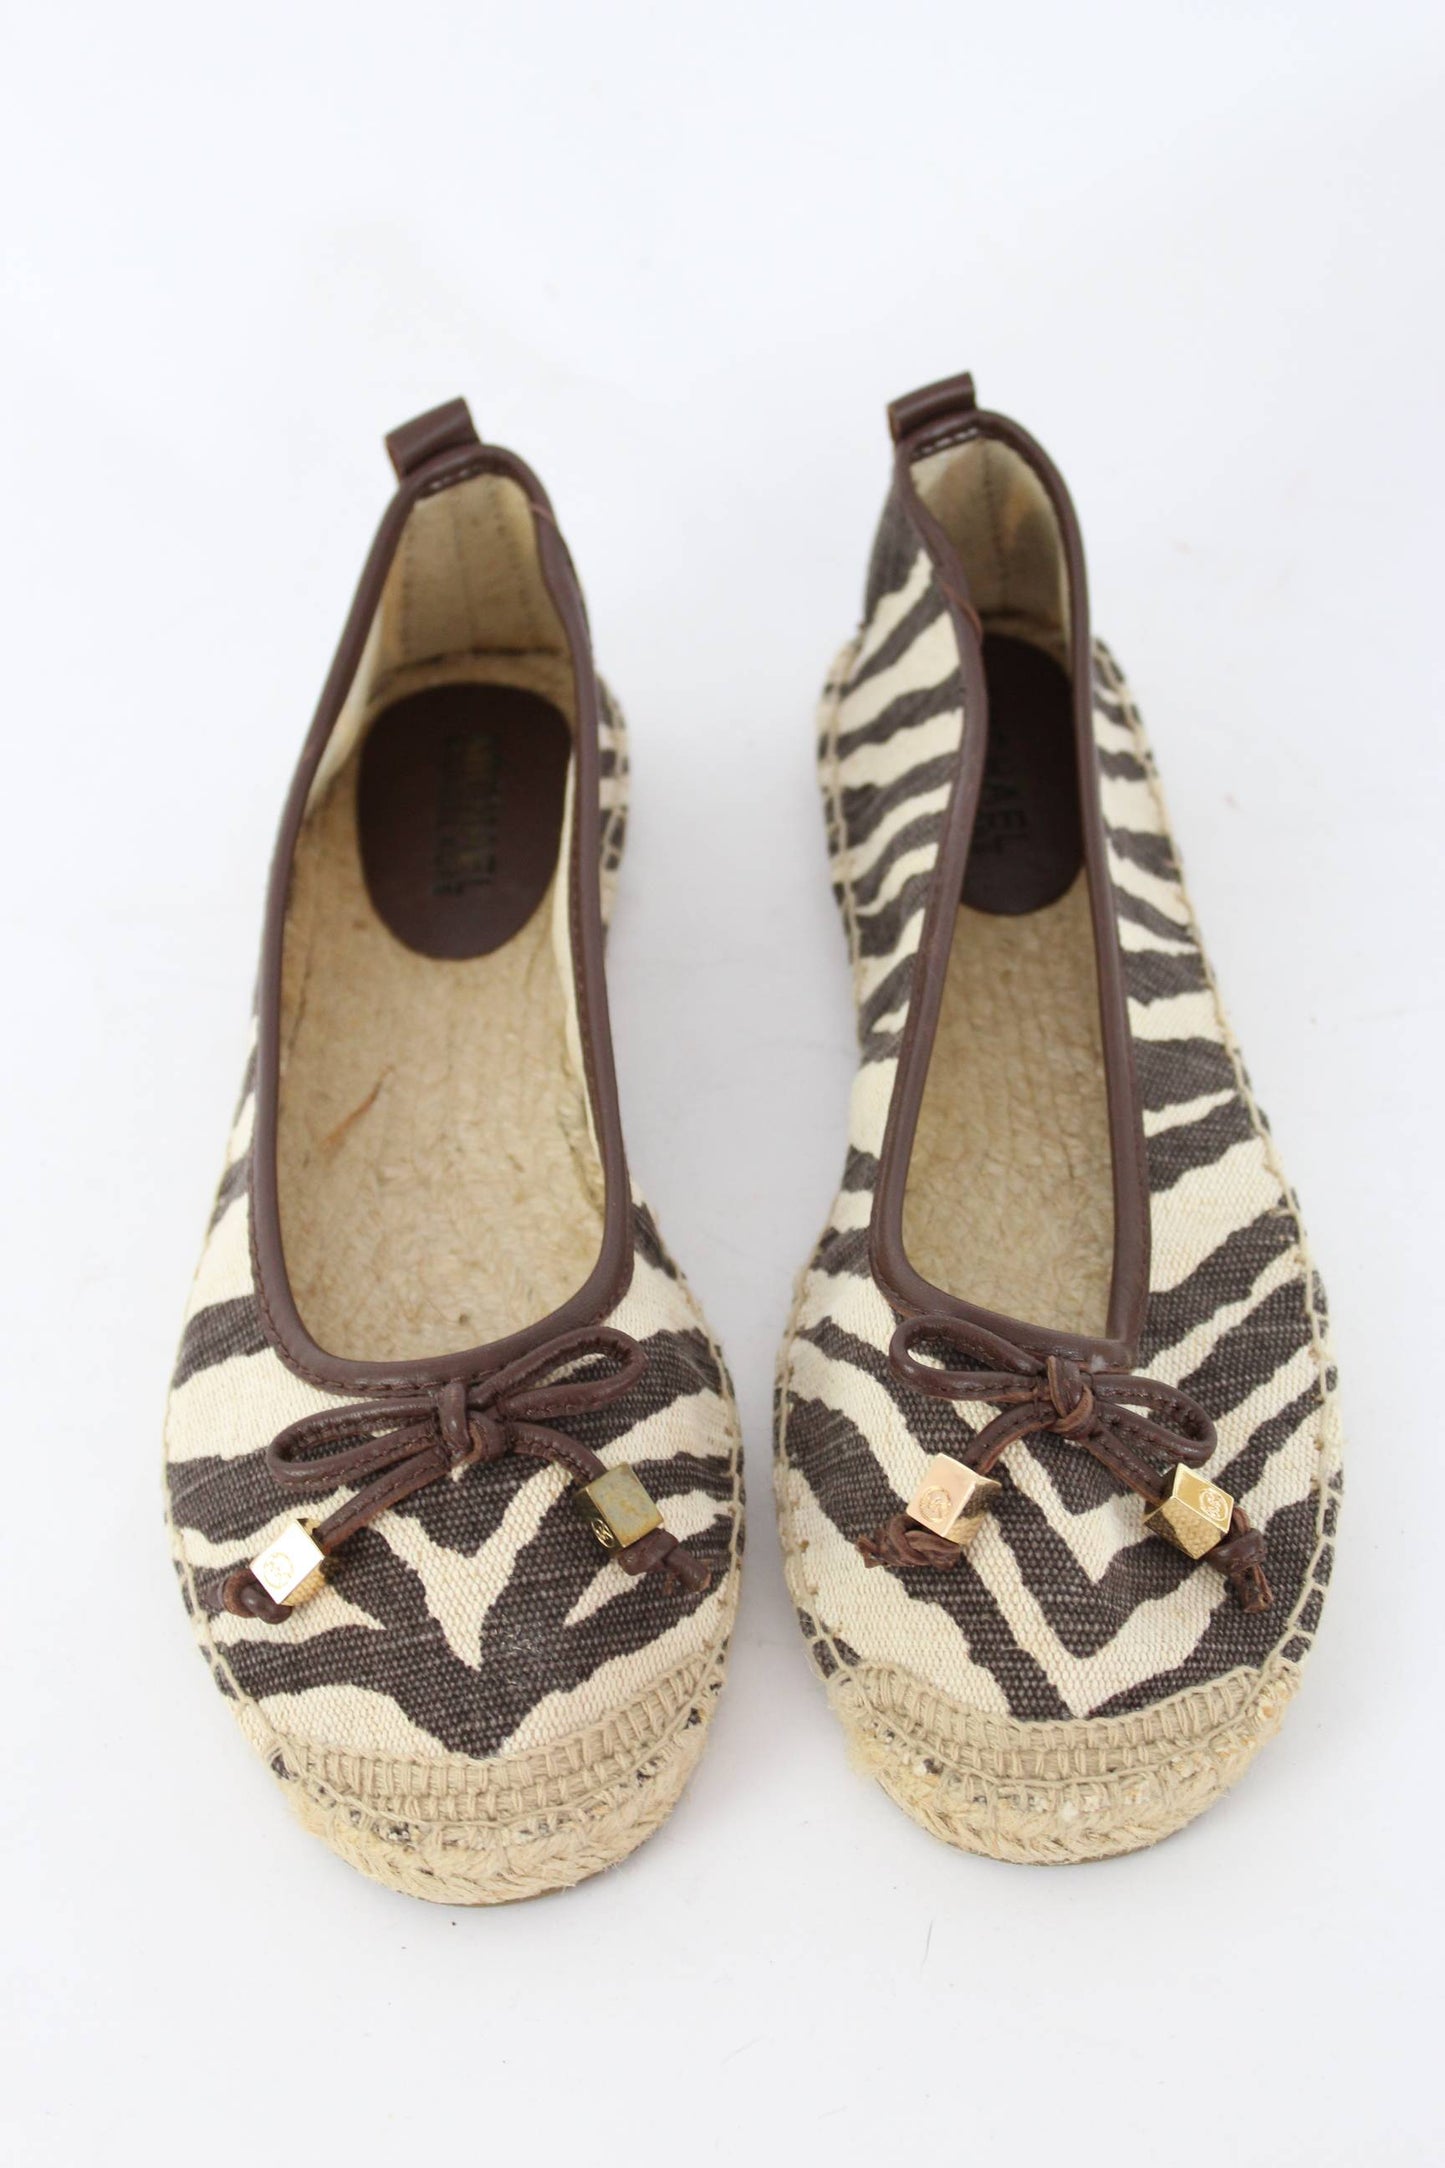 Michael Kors Canvas Leather Beige Brown Espadrilles Flat Shoes